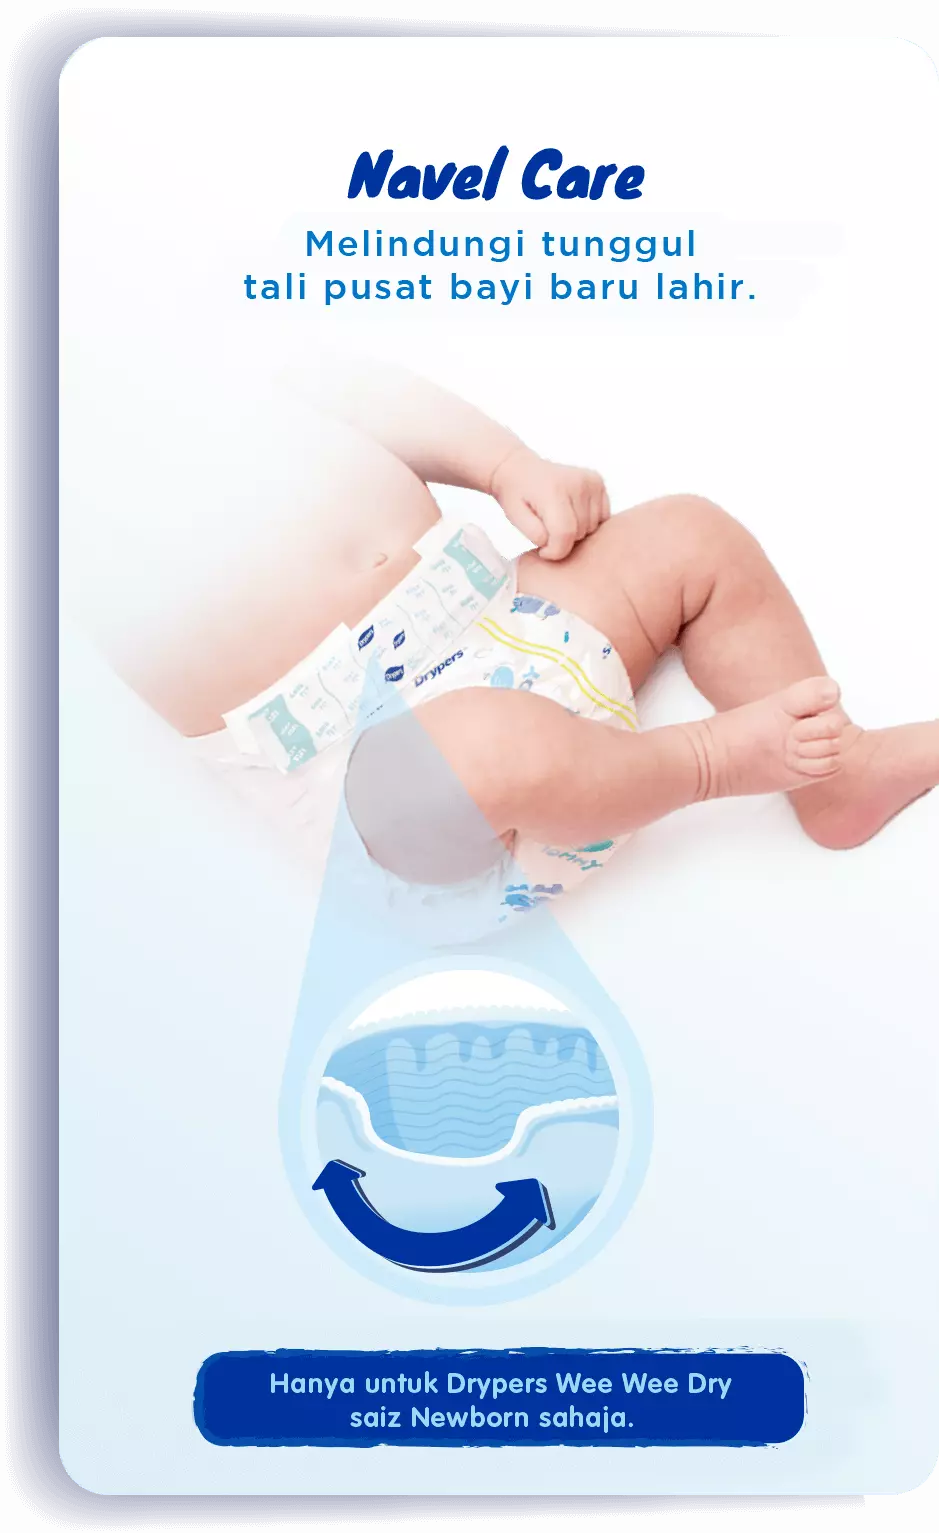 Navel Care: Melindungi tunggul tali pusat bayi baru lahir. | Hanya untuk Drypers Wee Wee Dry saiz Newborn sahaja.